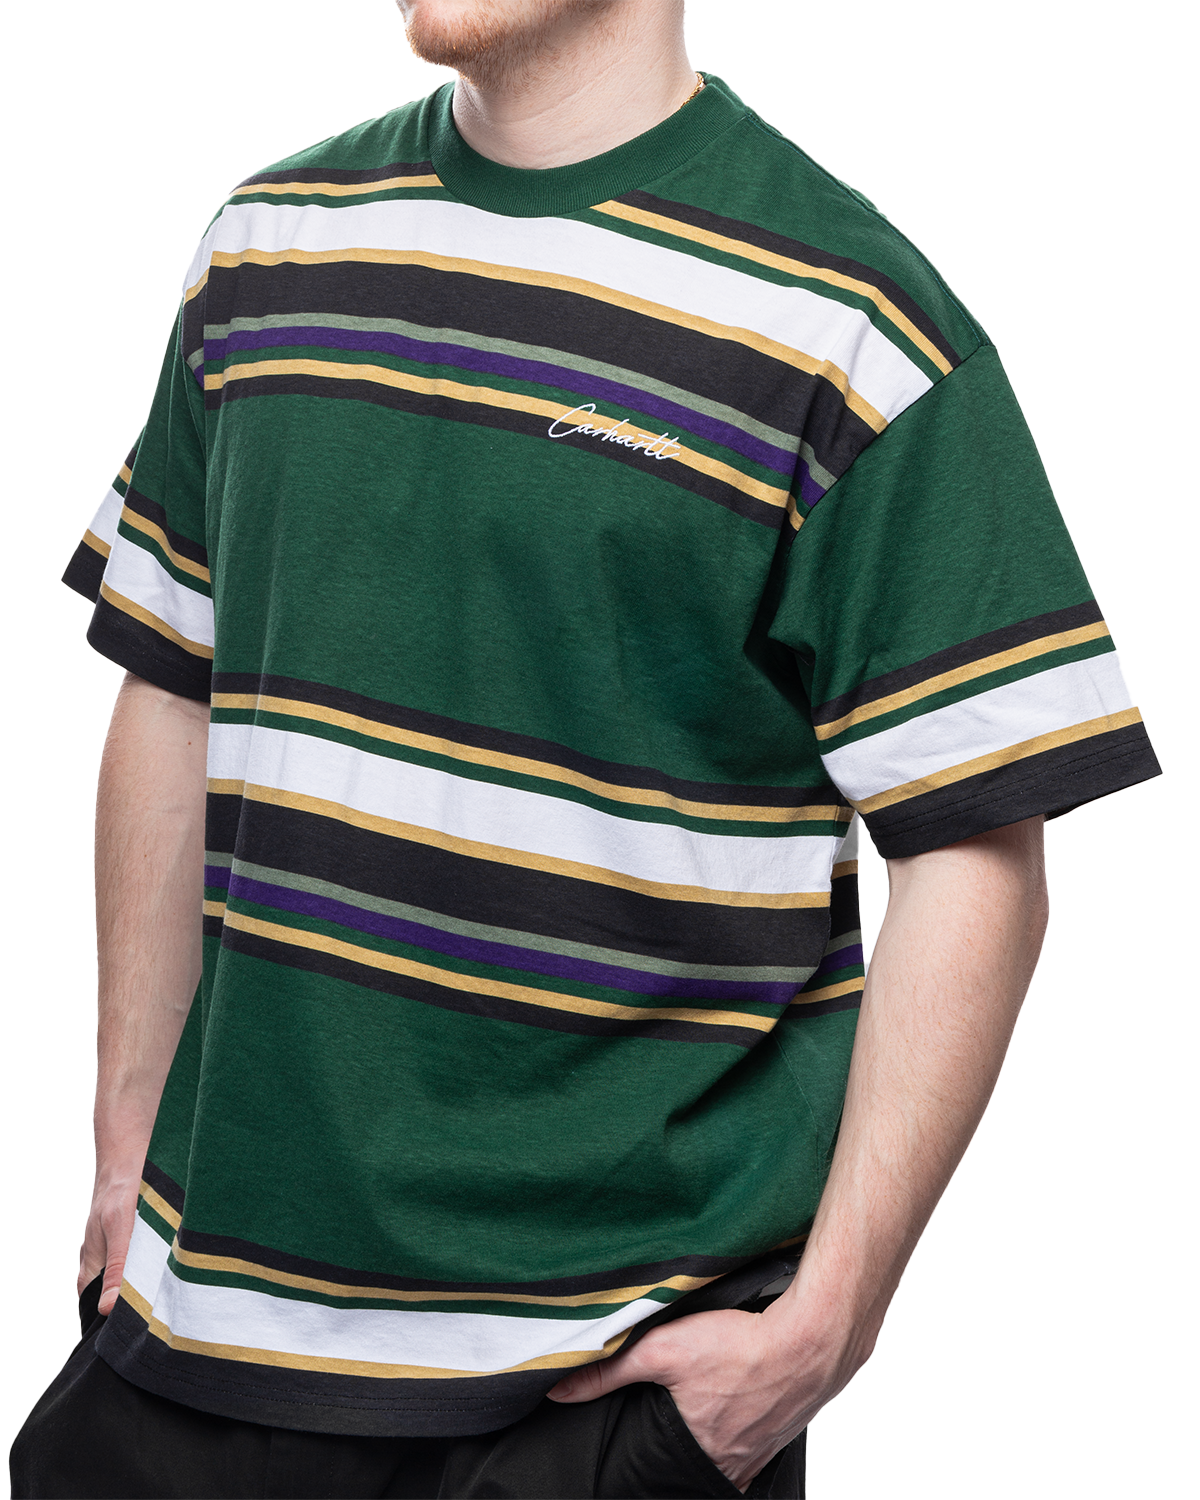 S/S Morcom T-Shirt Morcom Stripe/Chervil (Heavy Stone Wash)